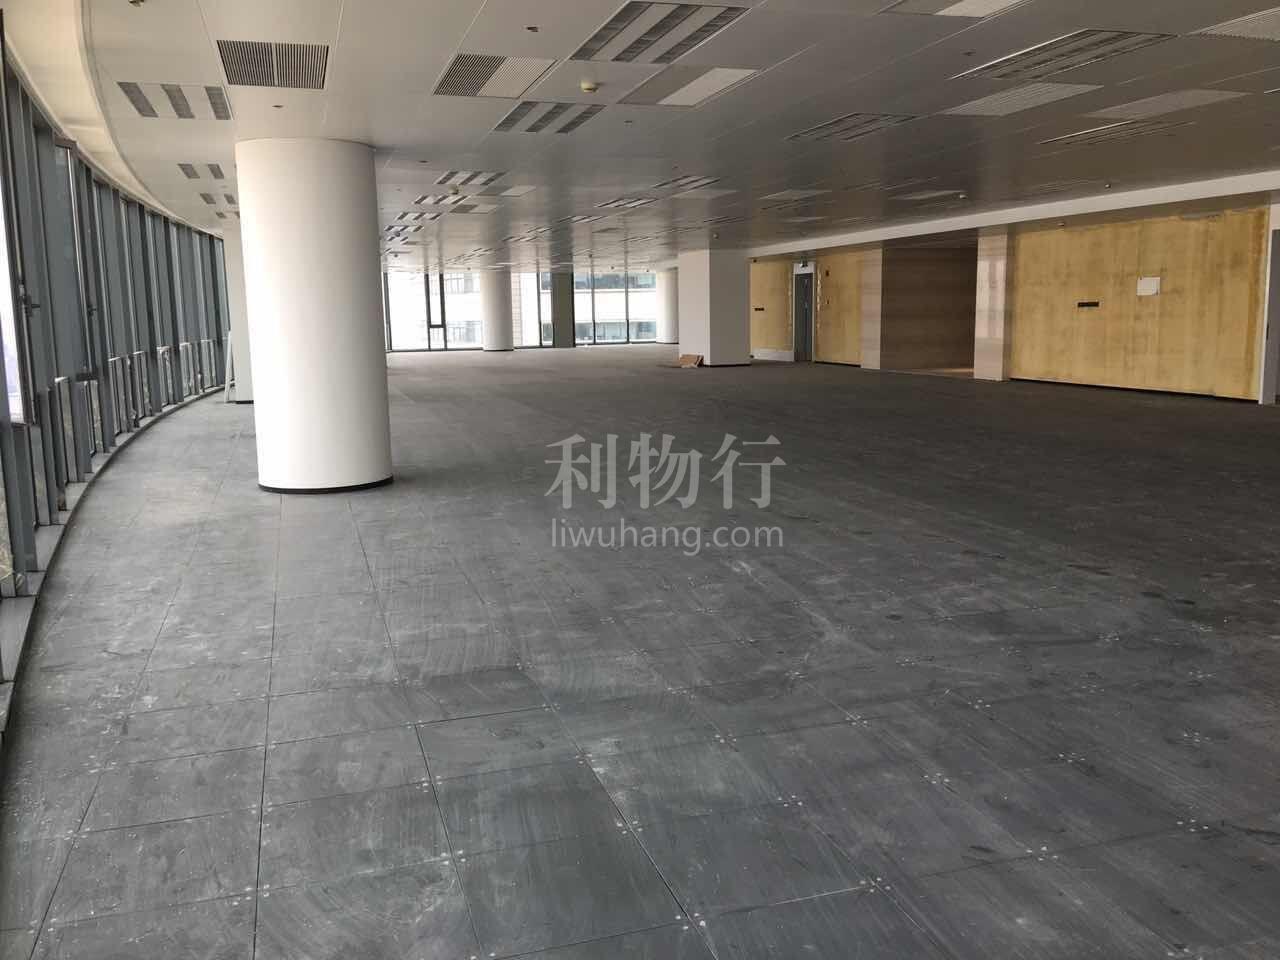 新源广场写字楼1120m2办公室6.00元/m2/天 中等装修